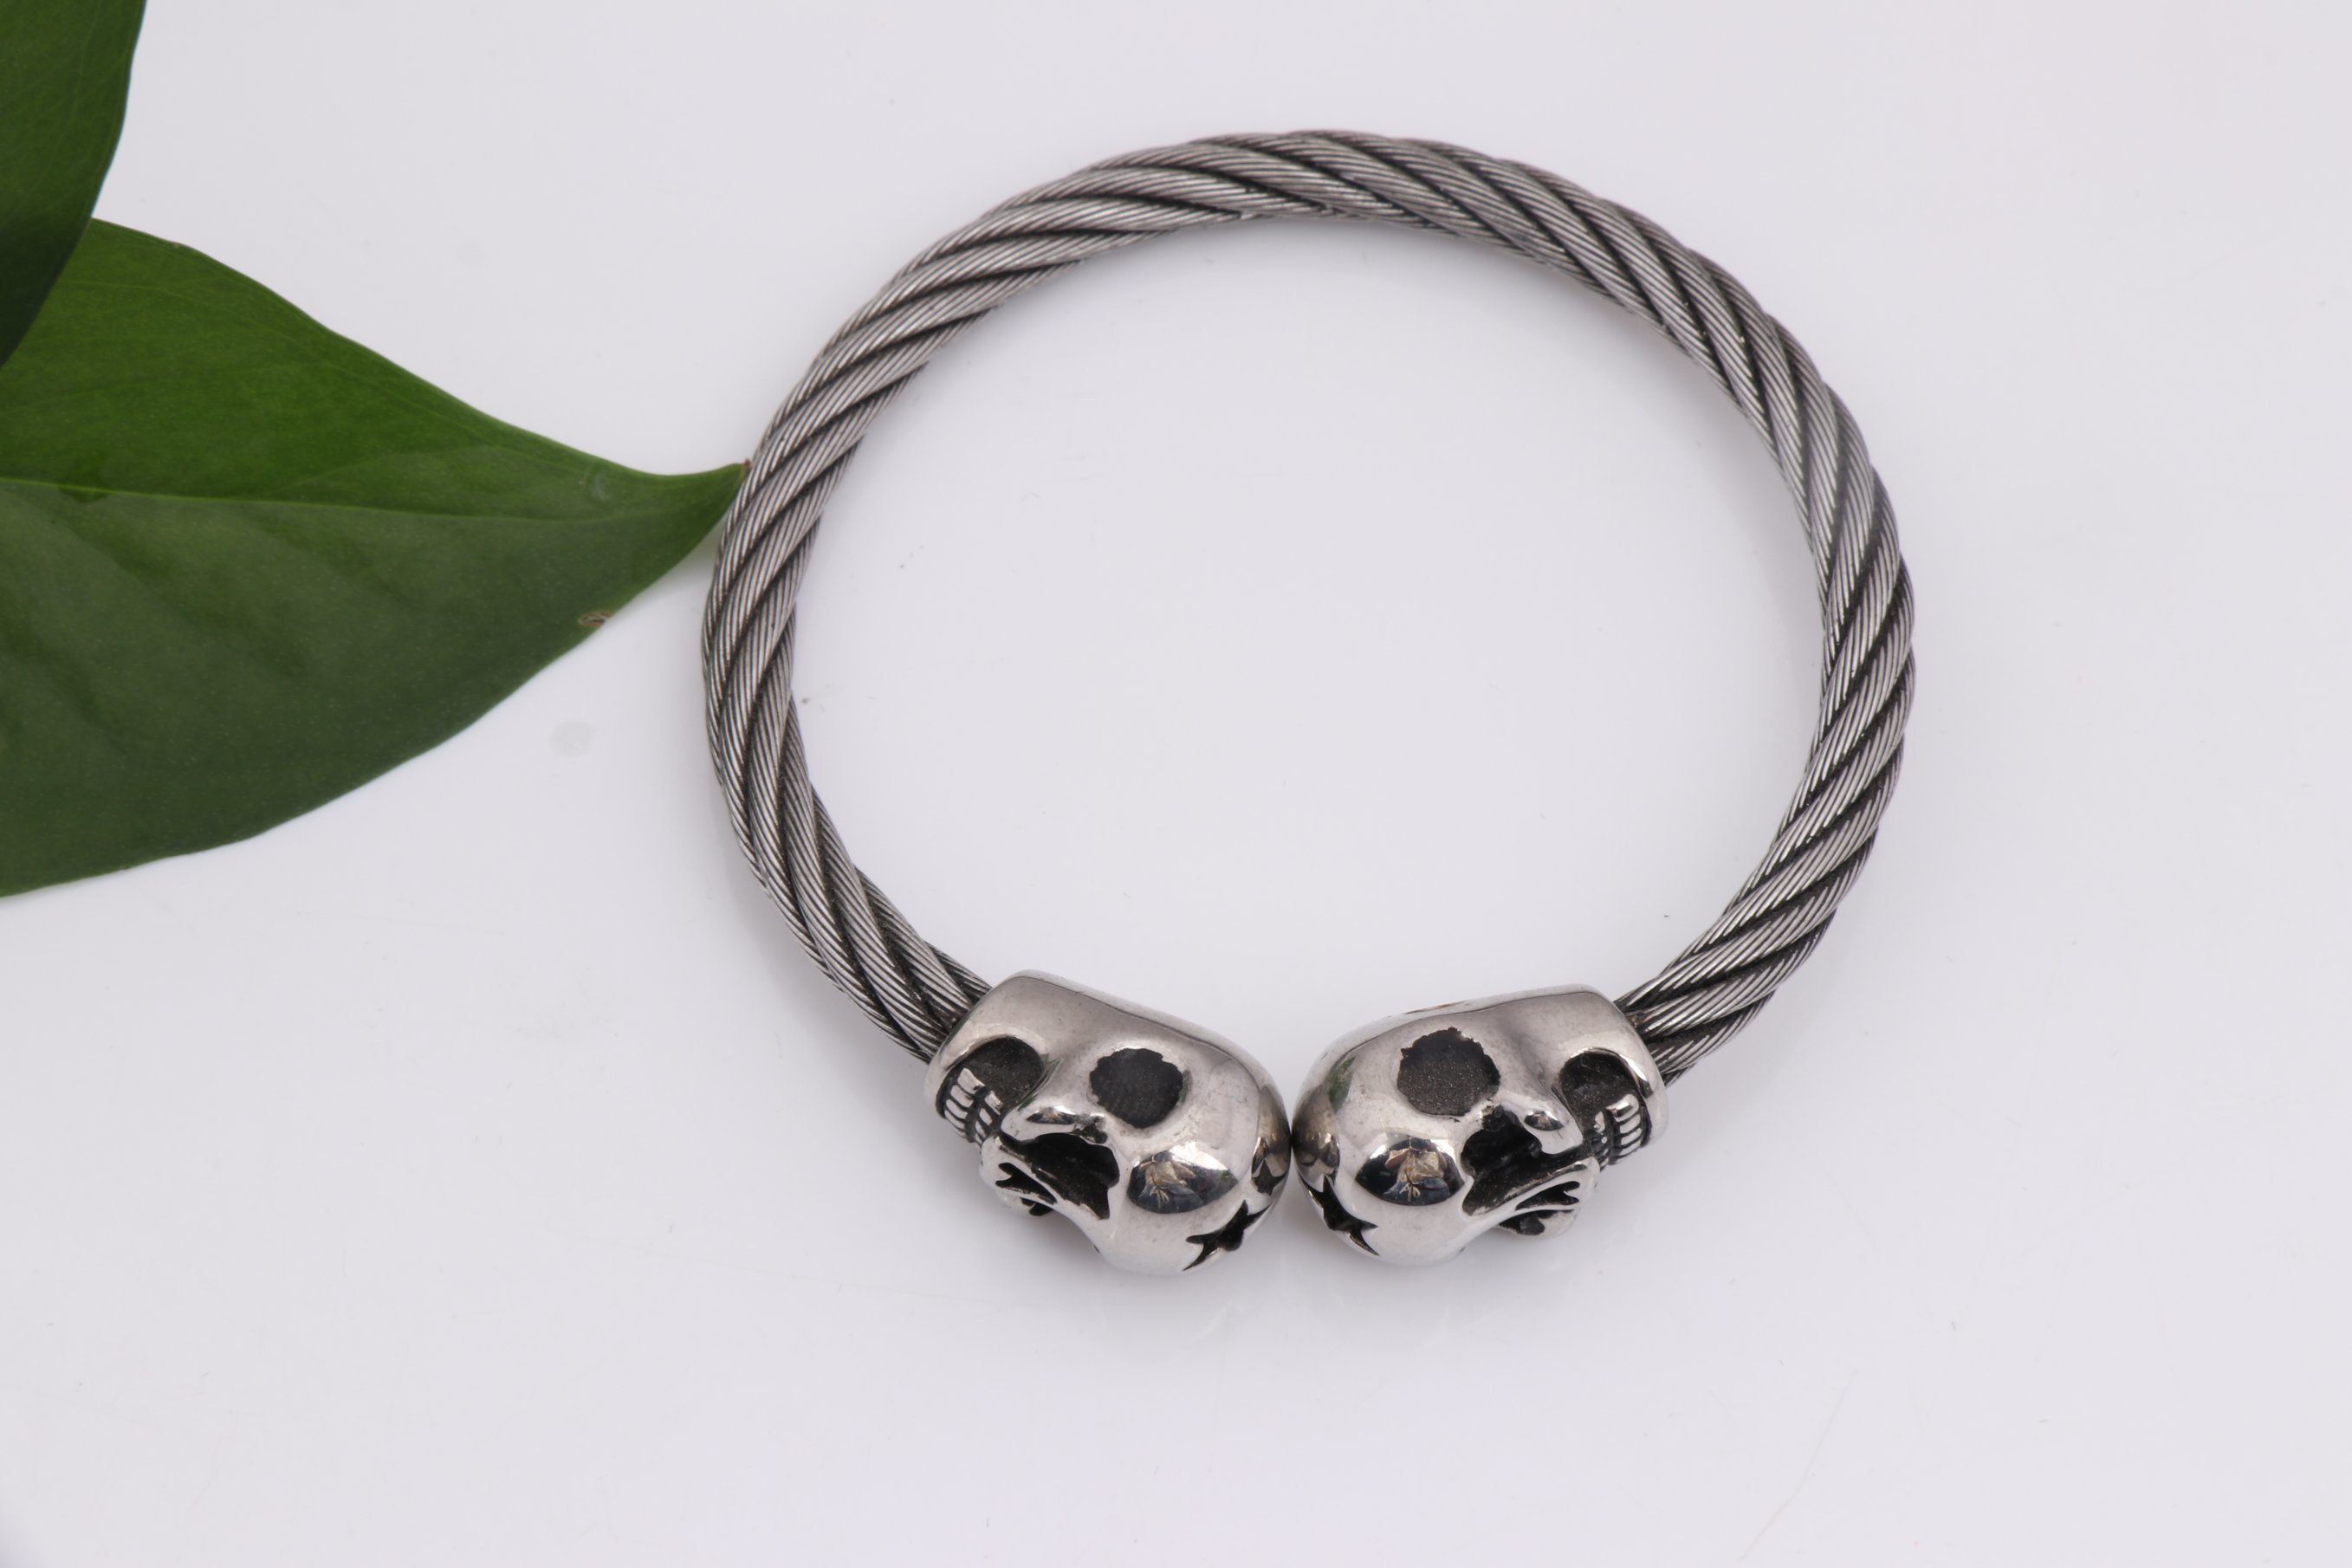 Stainless Steel Skull Bracelet Hot Sales